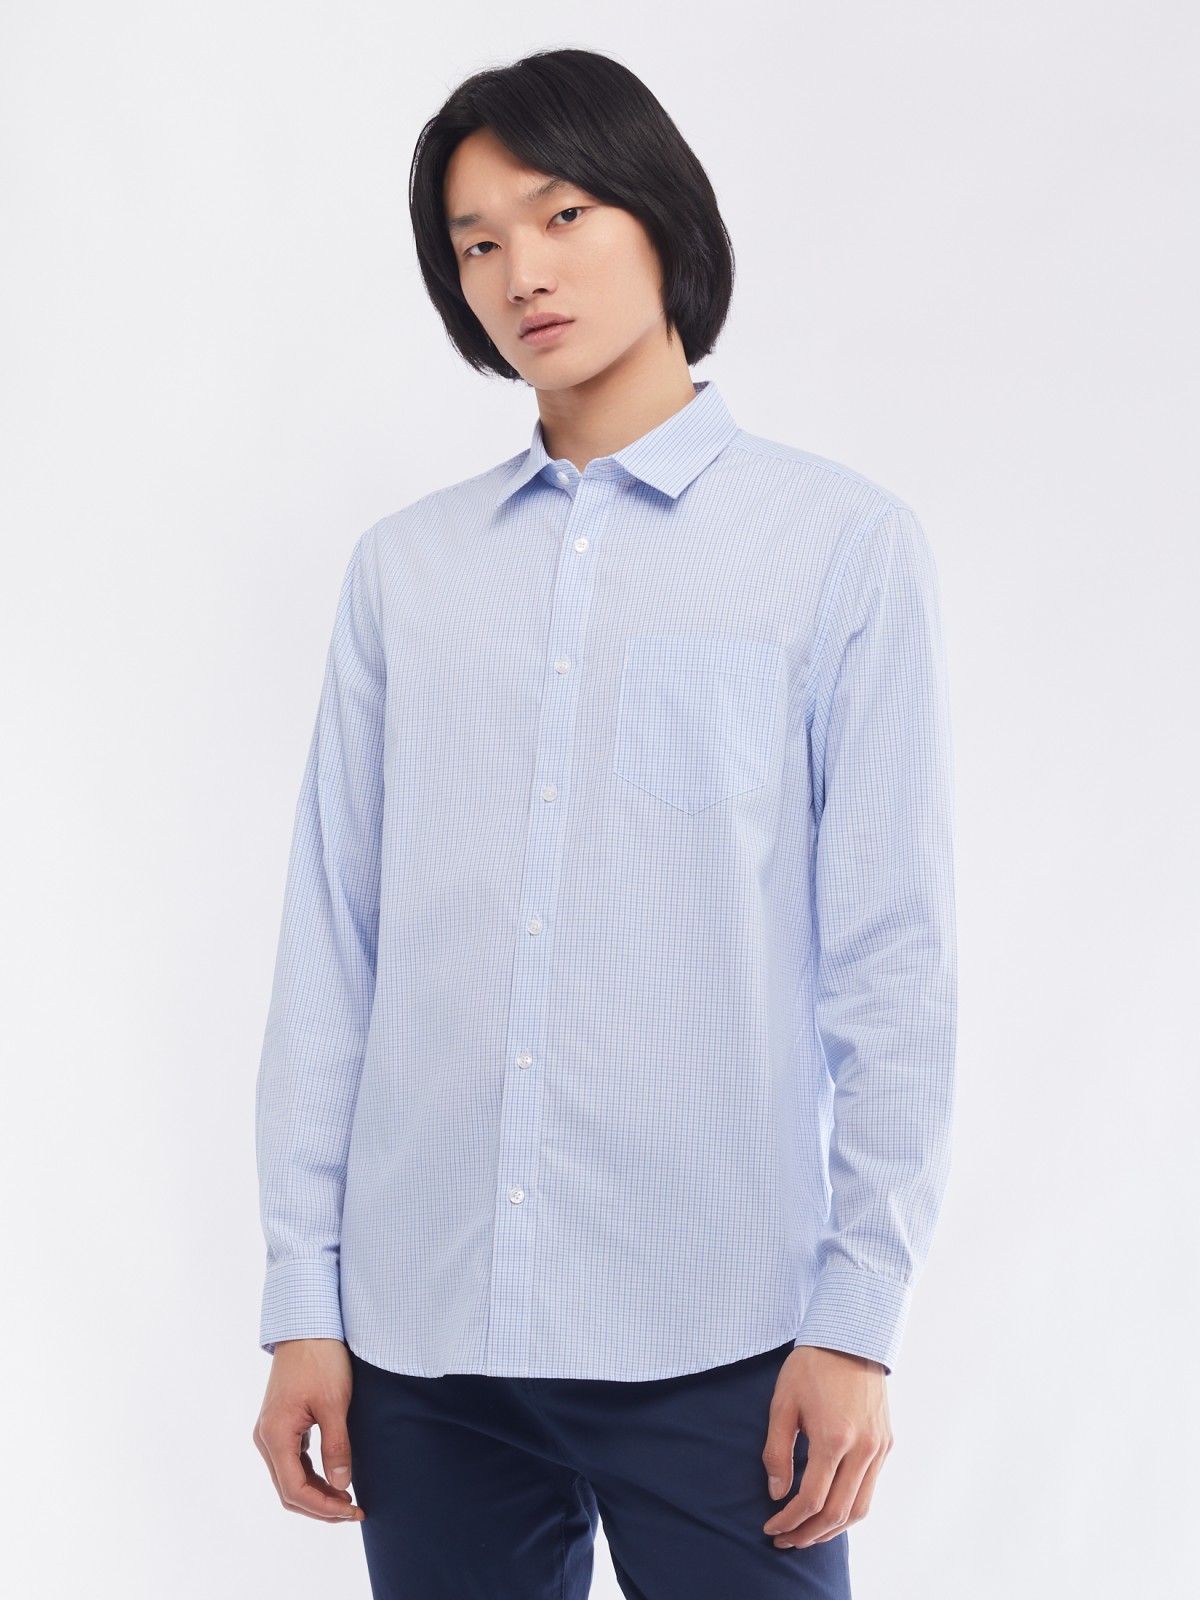 Офисная рубашка прямого силуэта с узором в клетку zolla 014112159062, цвет светло-голубой, размер M - фото 3